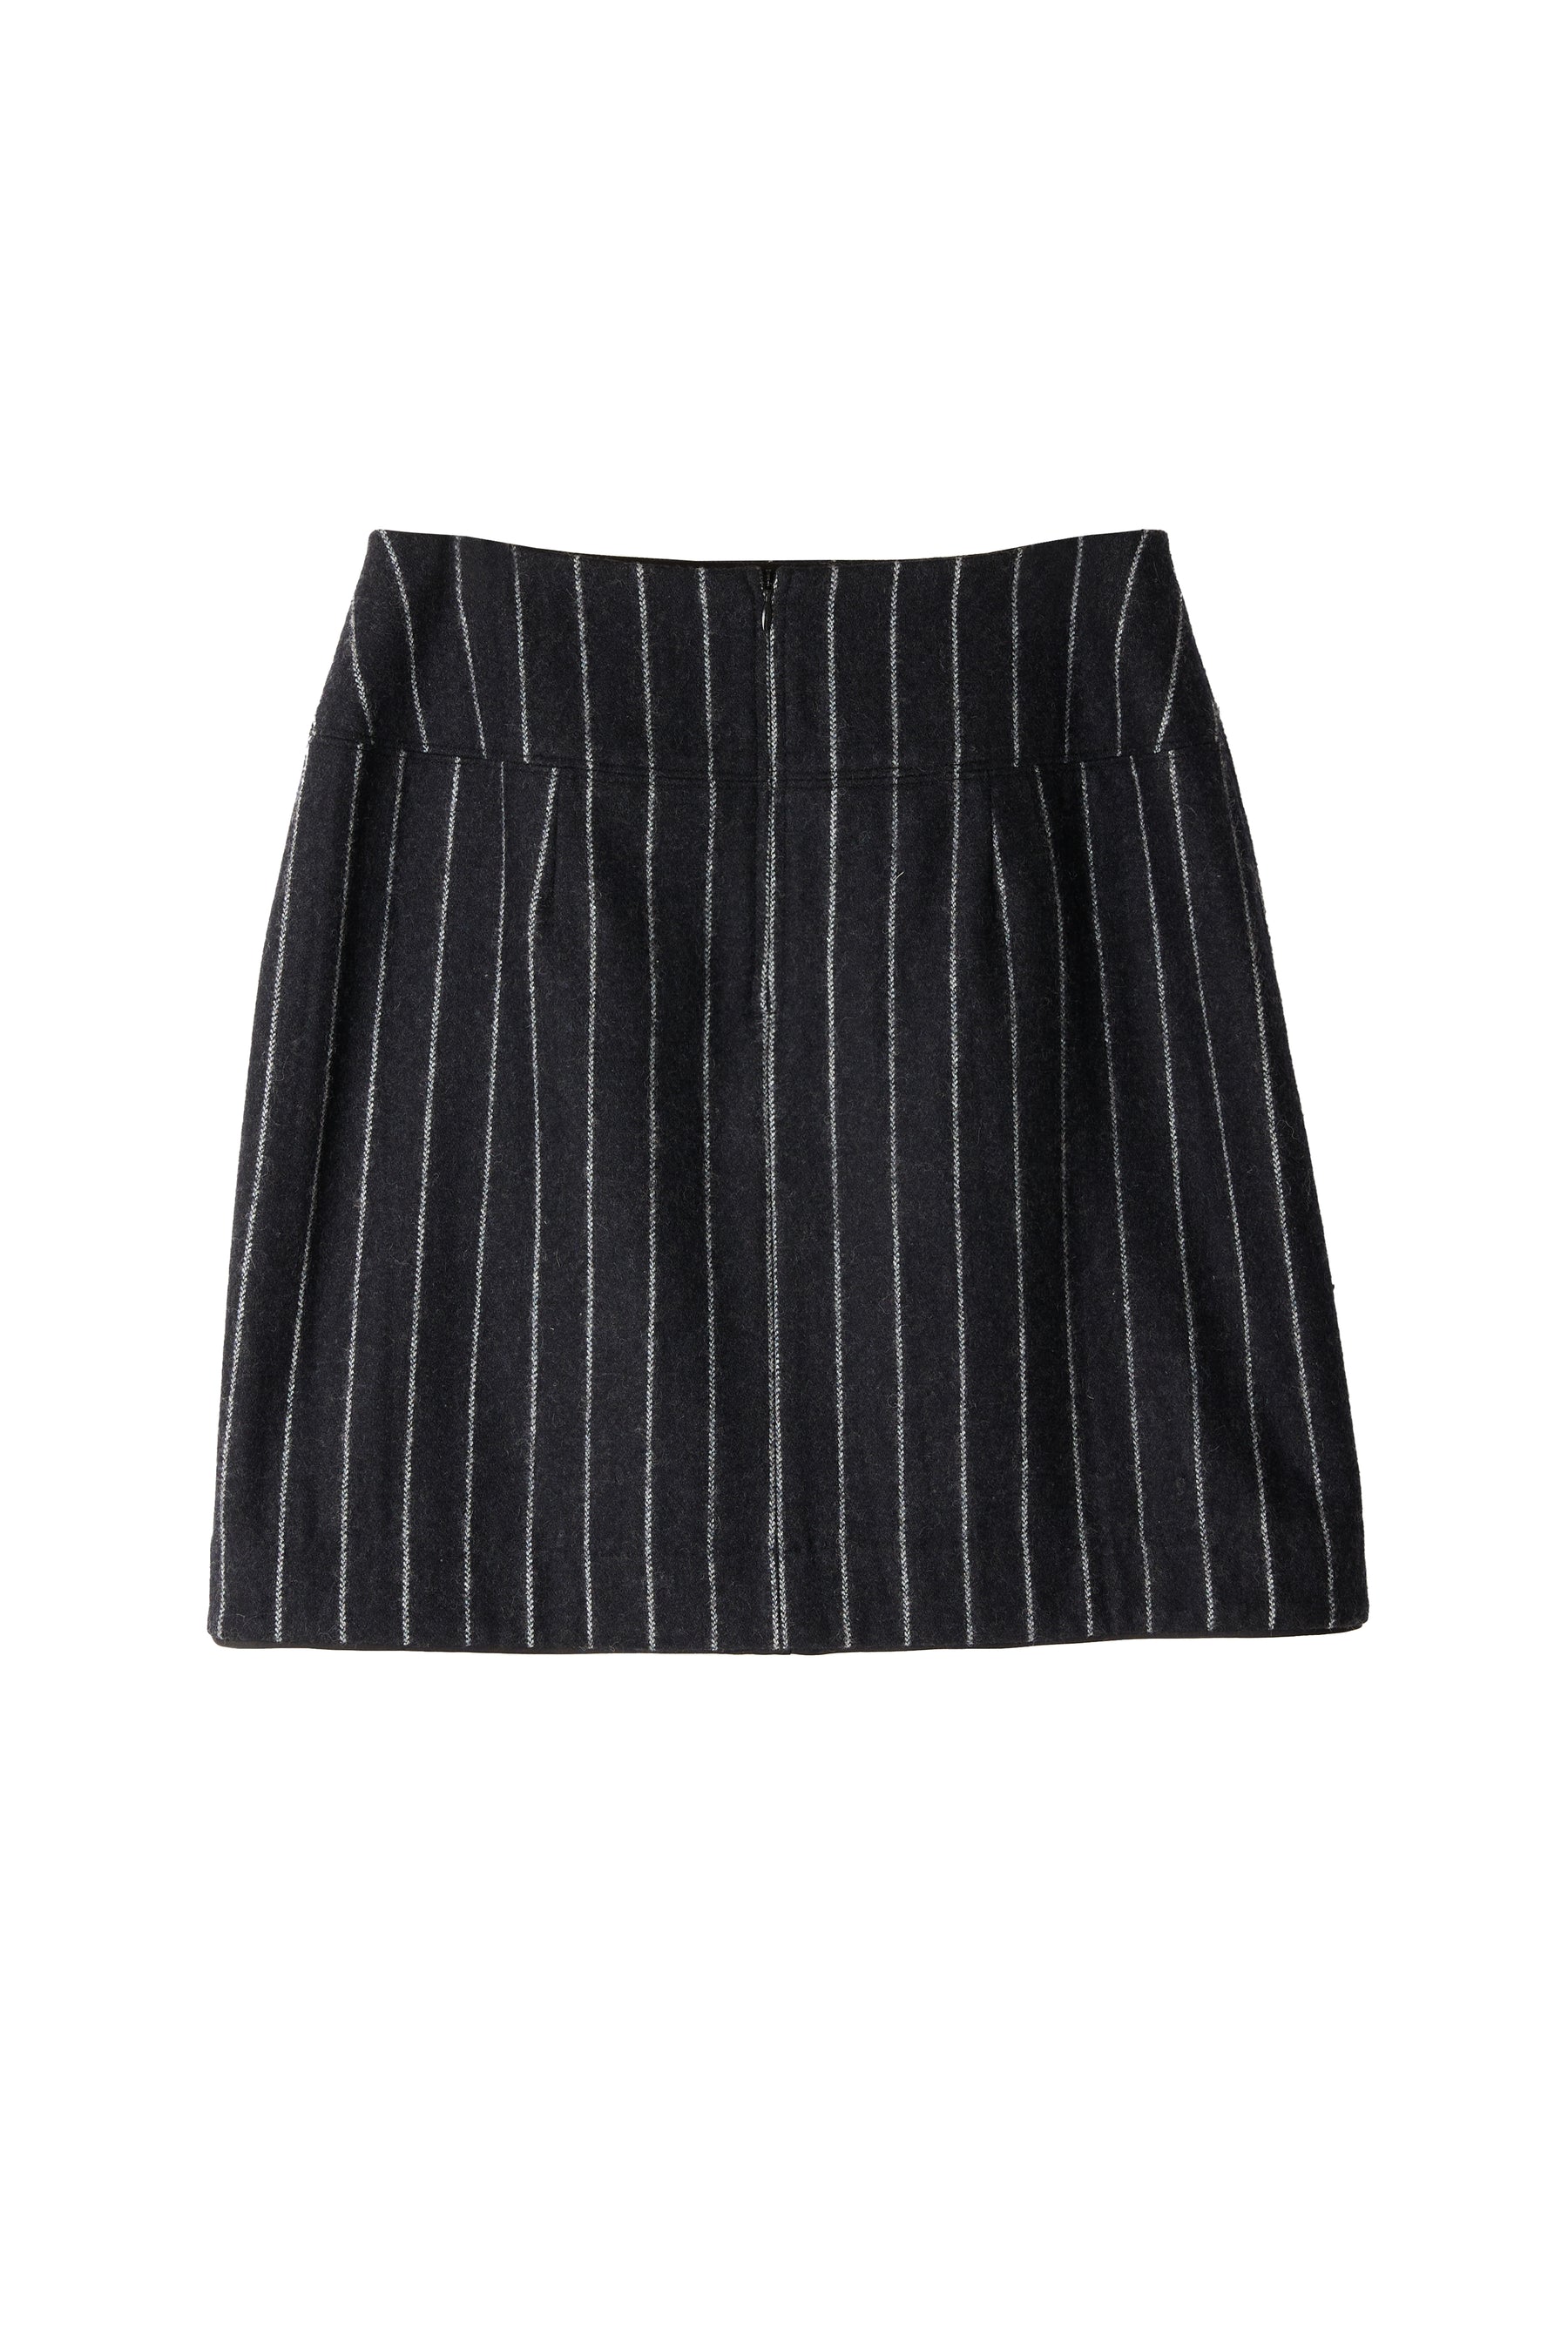 HerLipTo Over Check Wool-Blend Skirt-